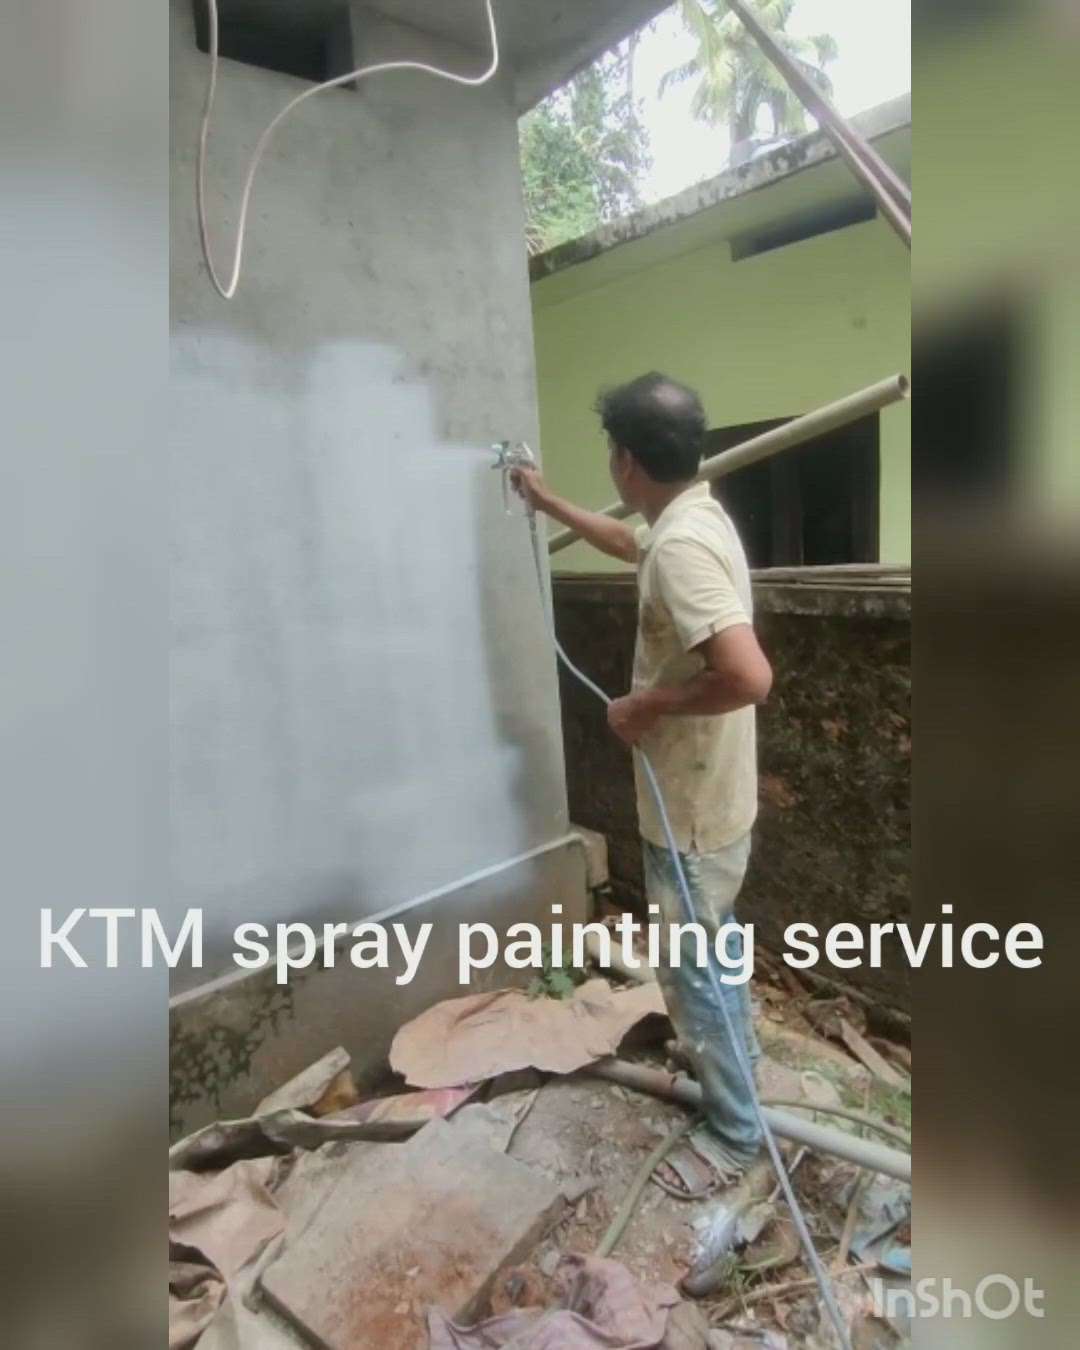 spray painting
#spraypainting